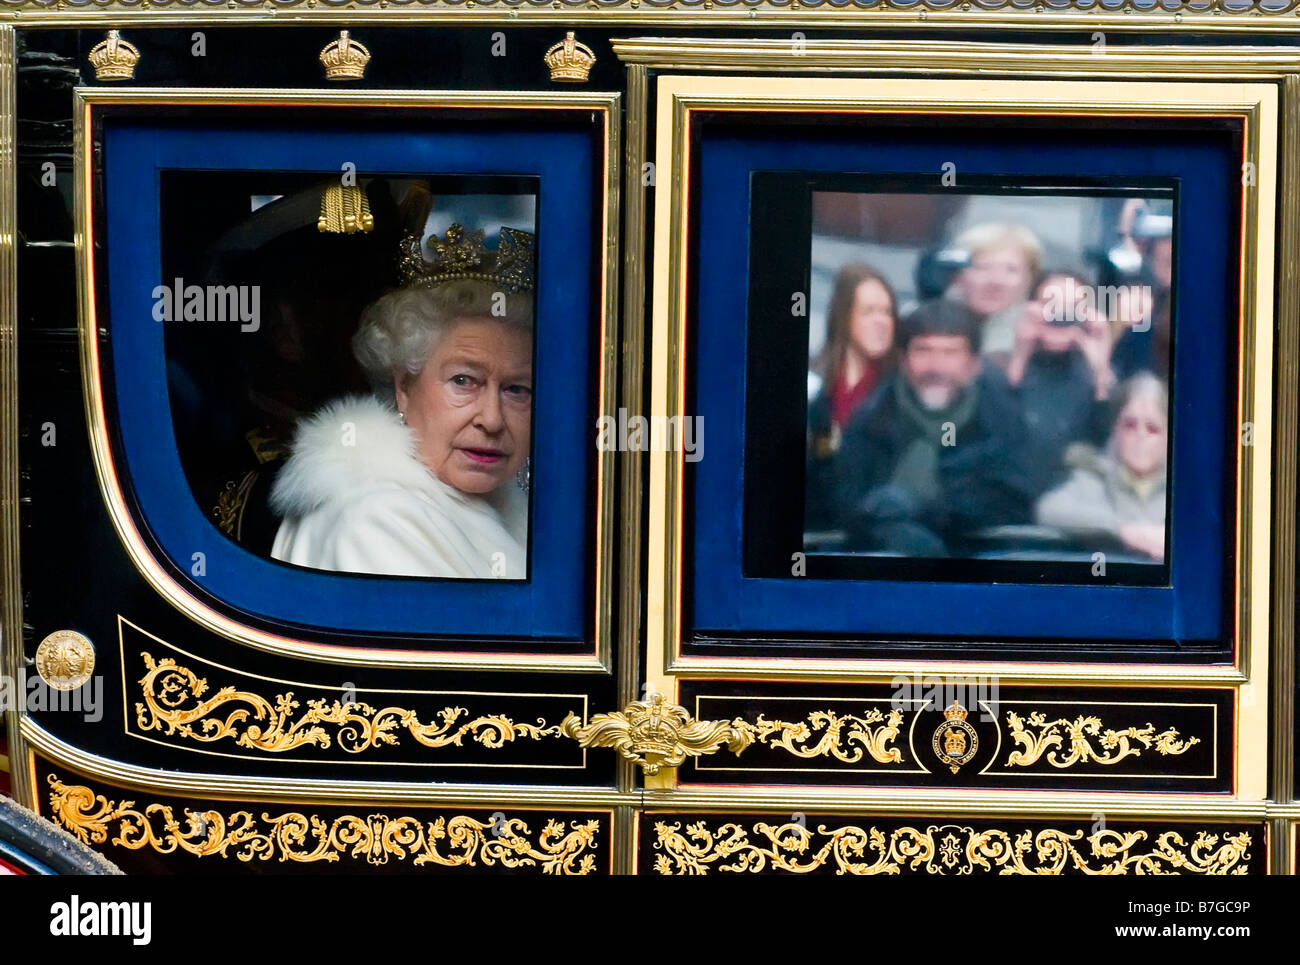 HM The Queen Reisen in der Postkutsche am Tag der Parlamentseröffnung, London Uk Stockfoto